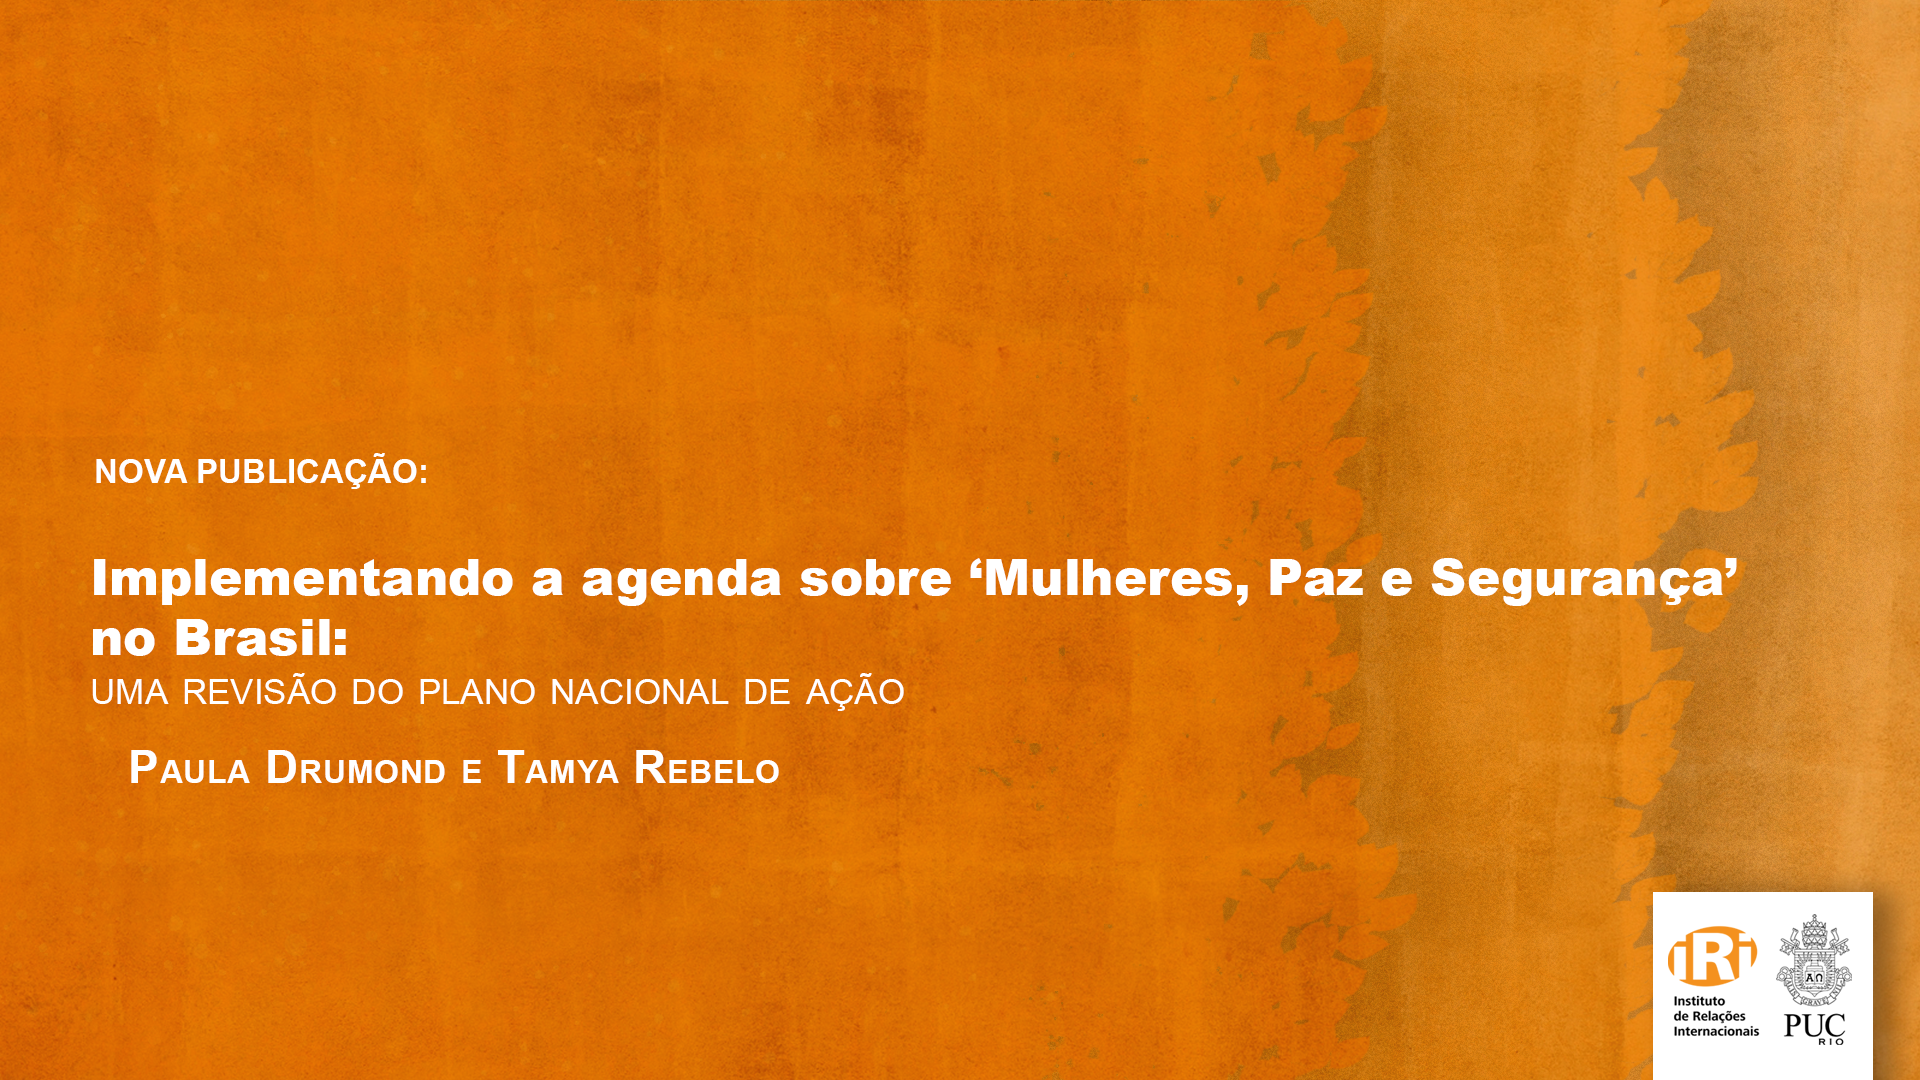 Implementando a agenda sobre ‘Mulheres, Paz e Segurança’ no Brasil: uma revisão do Plano Nacional de Ação